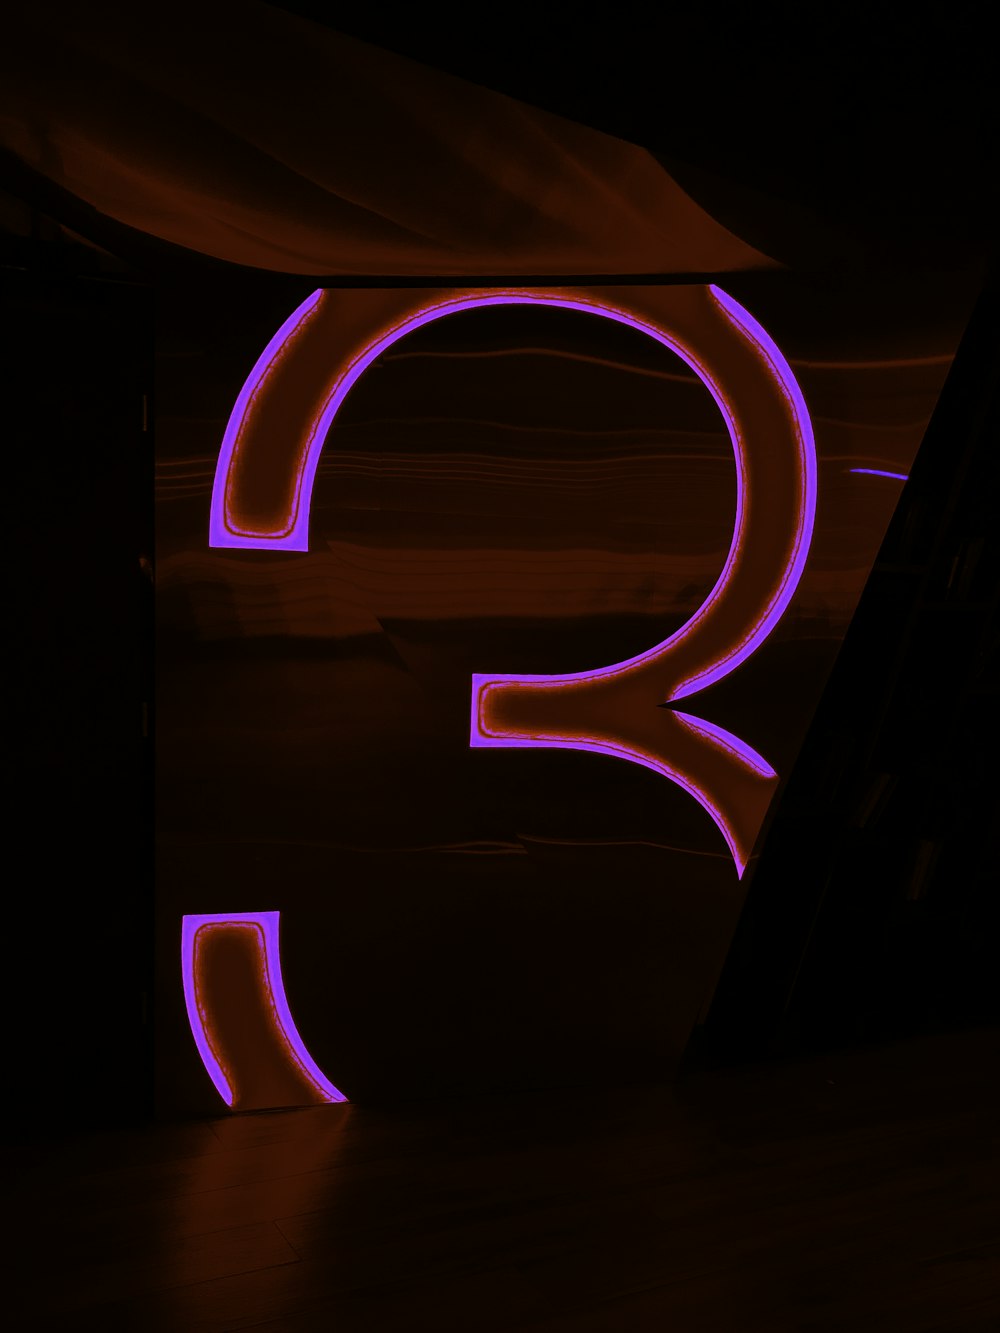 La letra Q se ilumina en la oscuridad